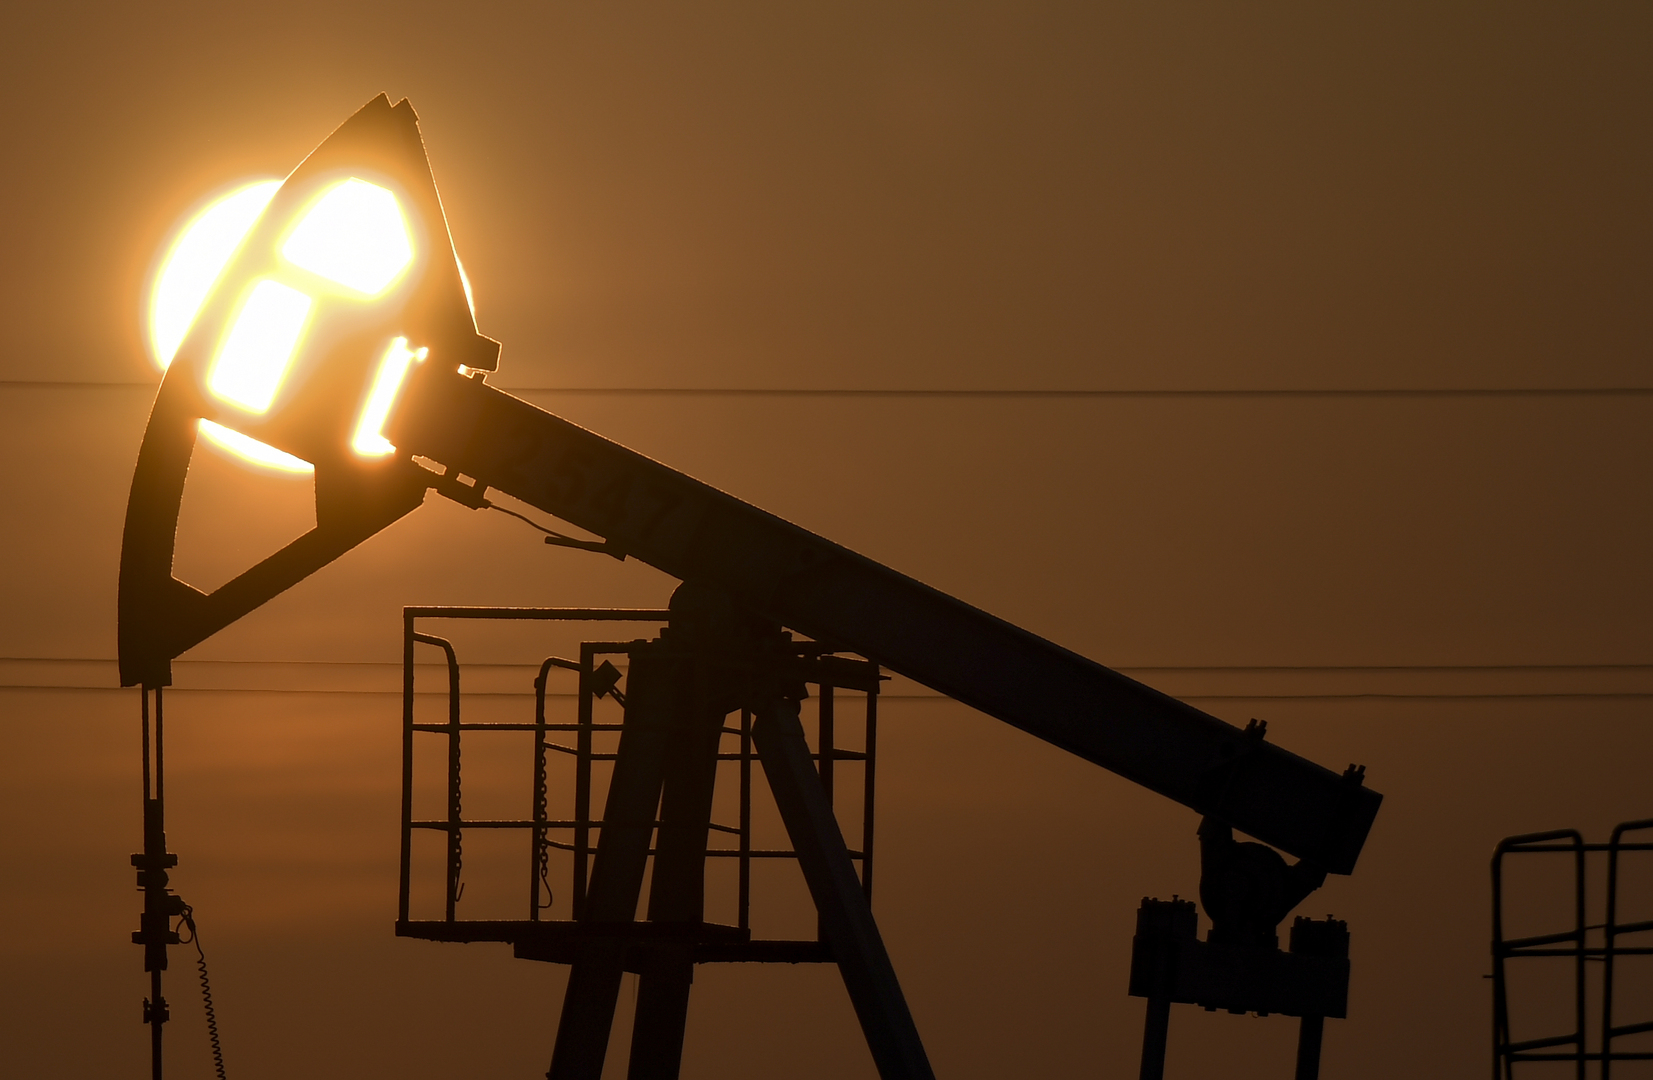 كازاخستان: الطاقة الروسية وافقت على نقل النفط الكازاخستاني عبر الأراضي الروسية إلى ألمانيا